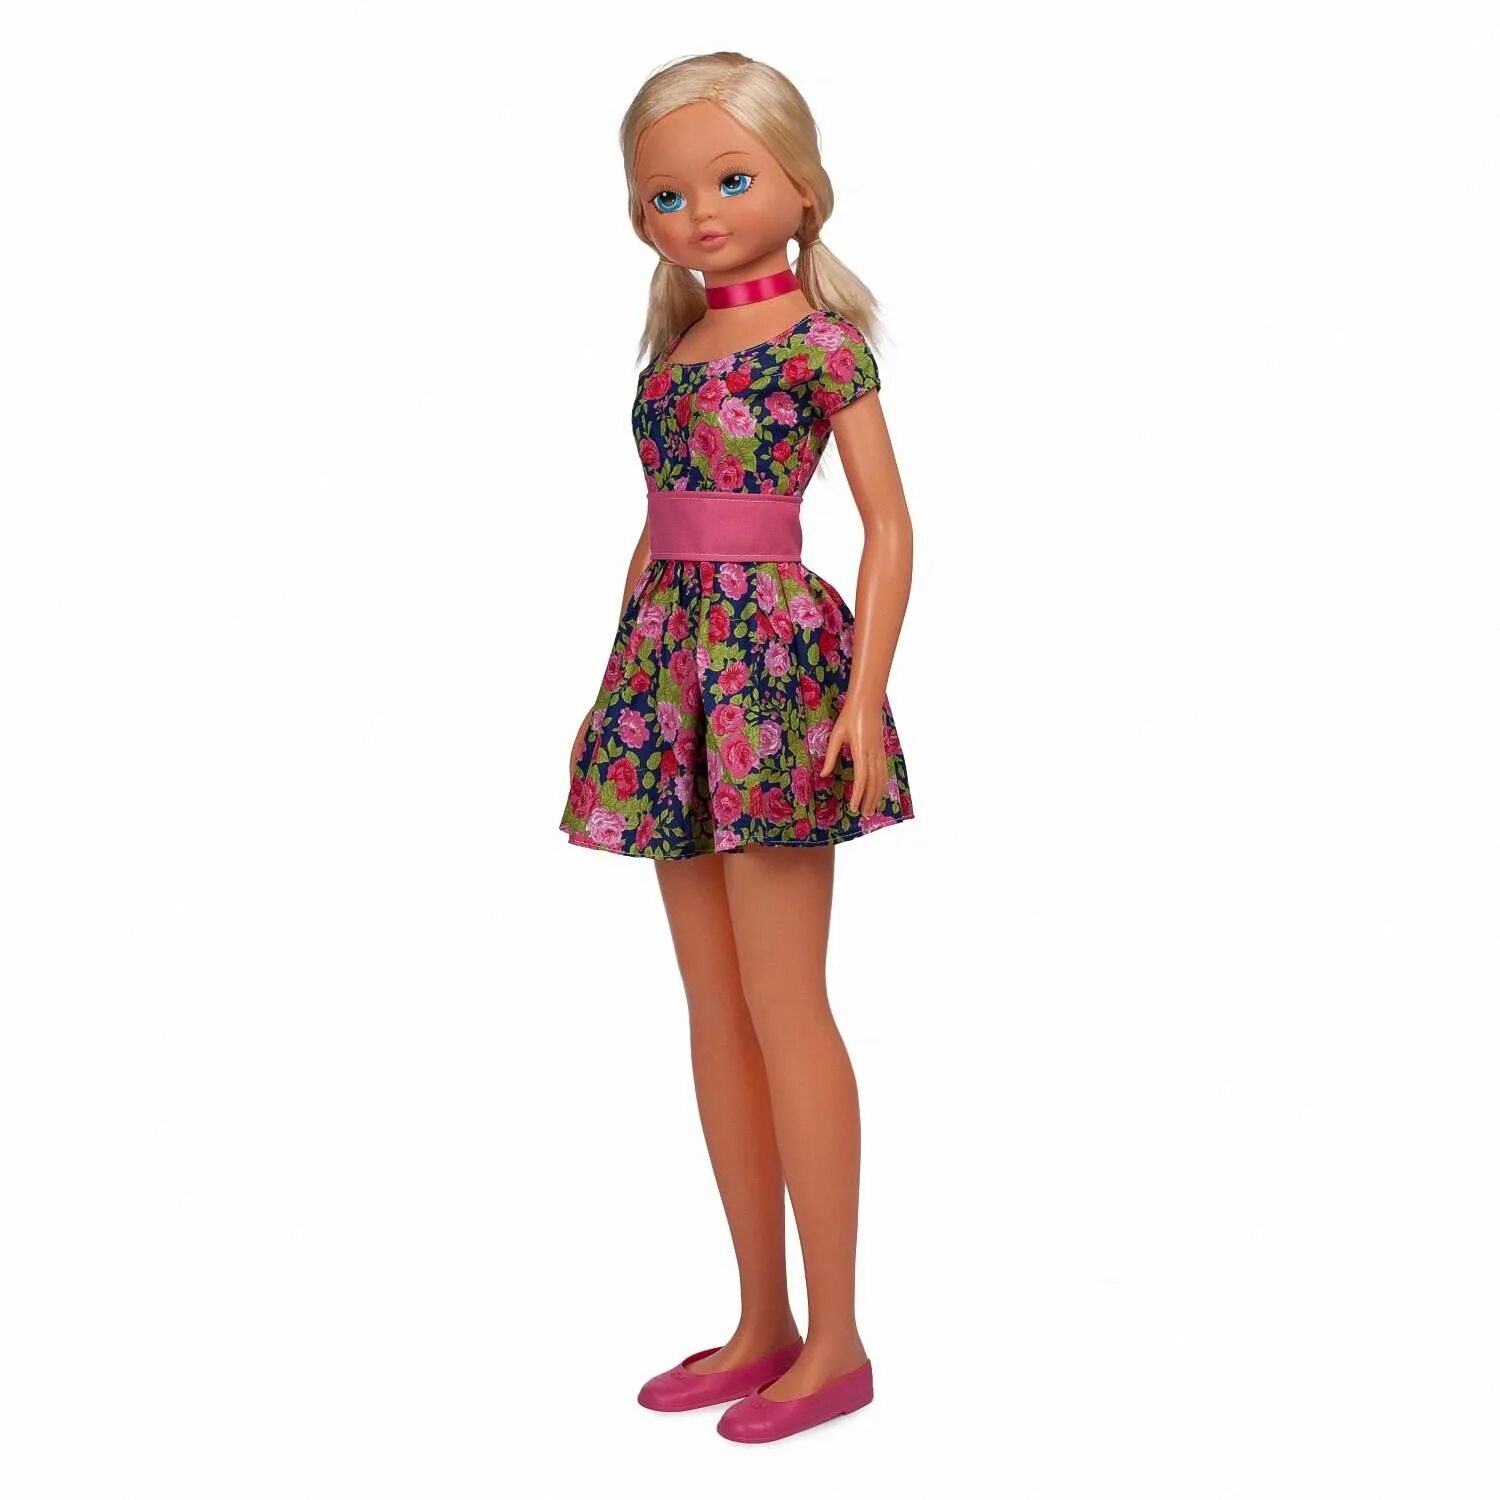 Человек 105 см. Кукла Demi Star в розовом платье.